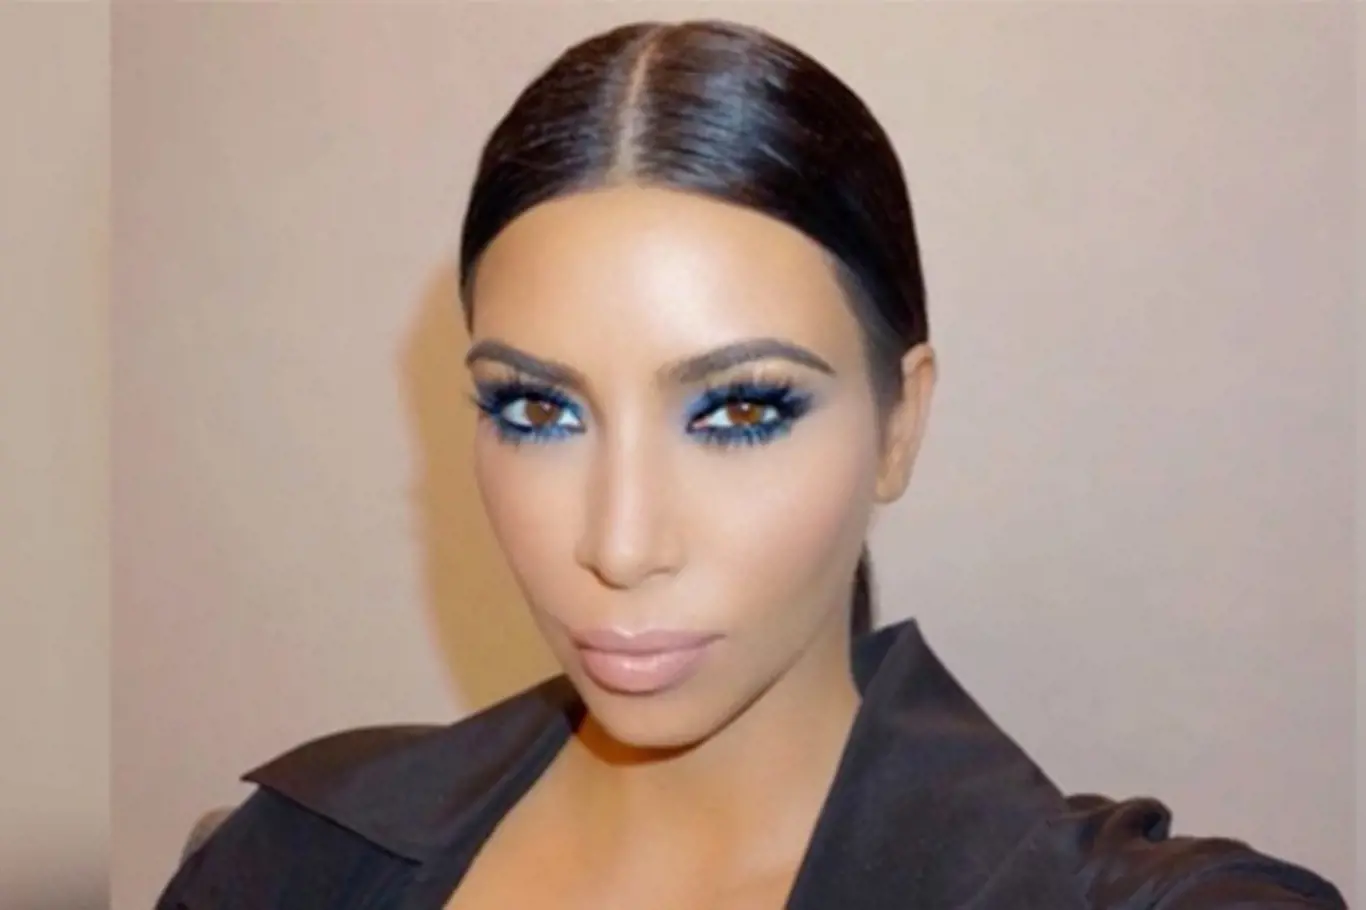 Make-up podle Kim Kardashian krok za krokem!